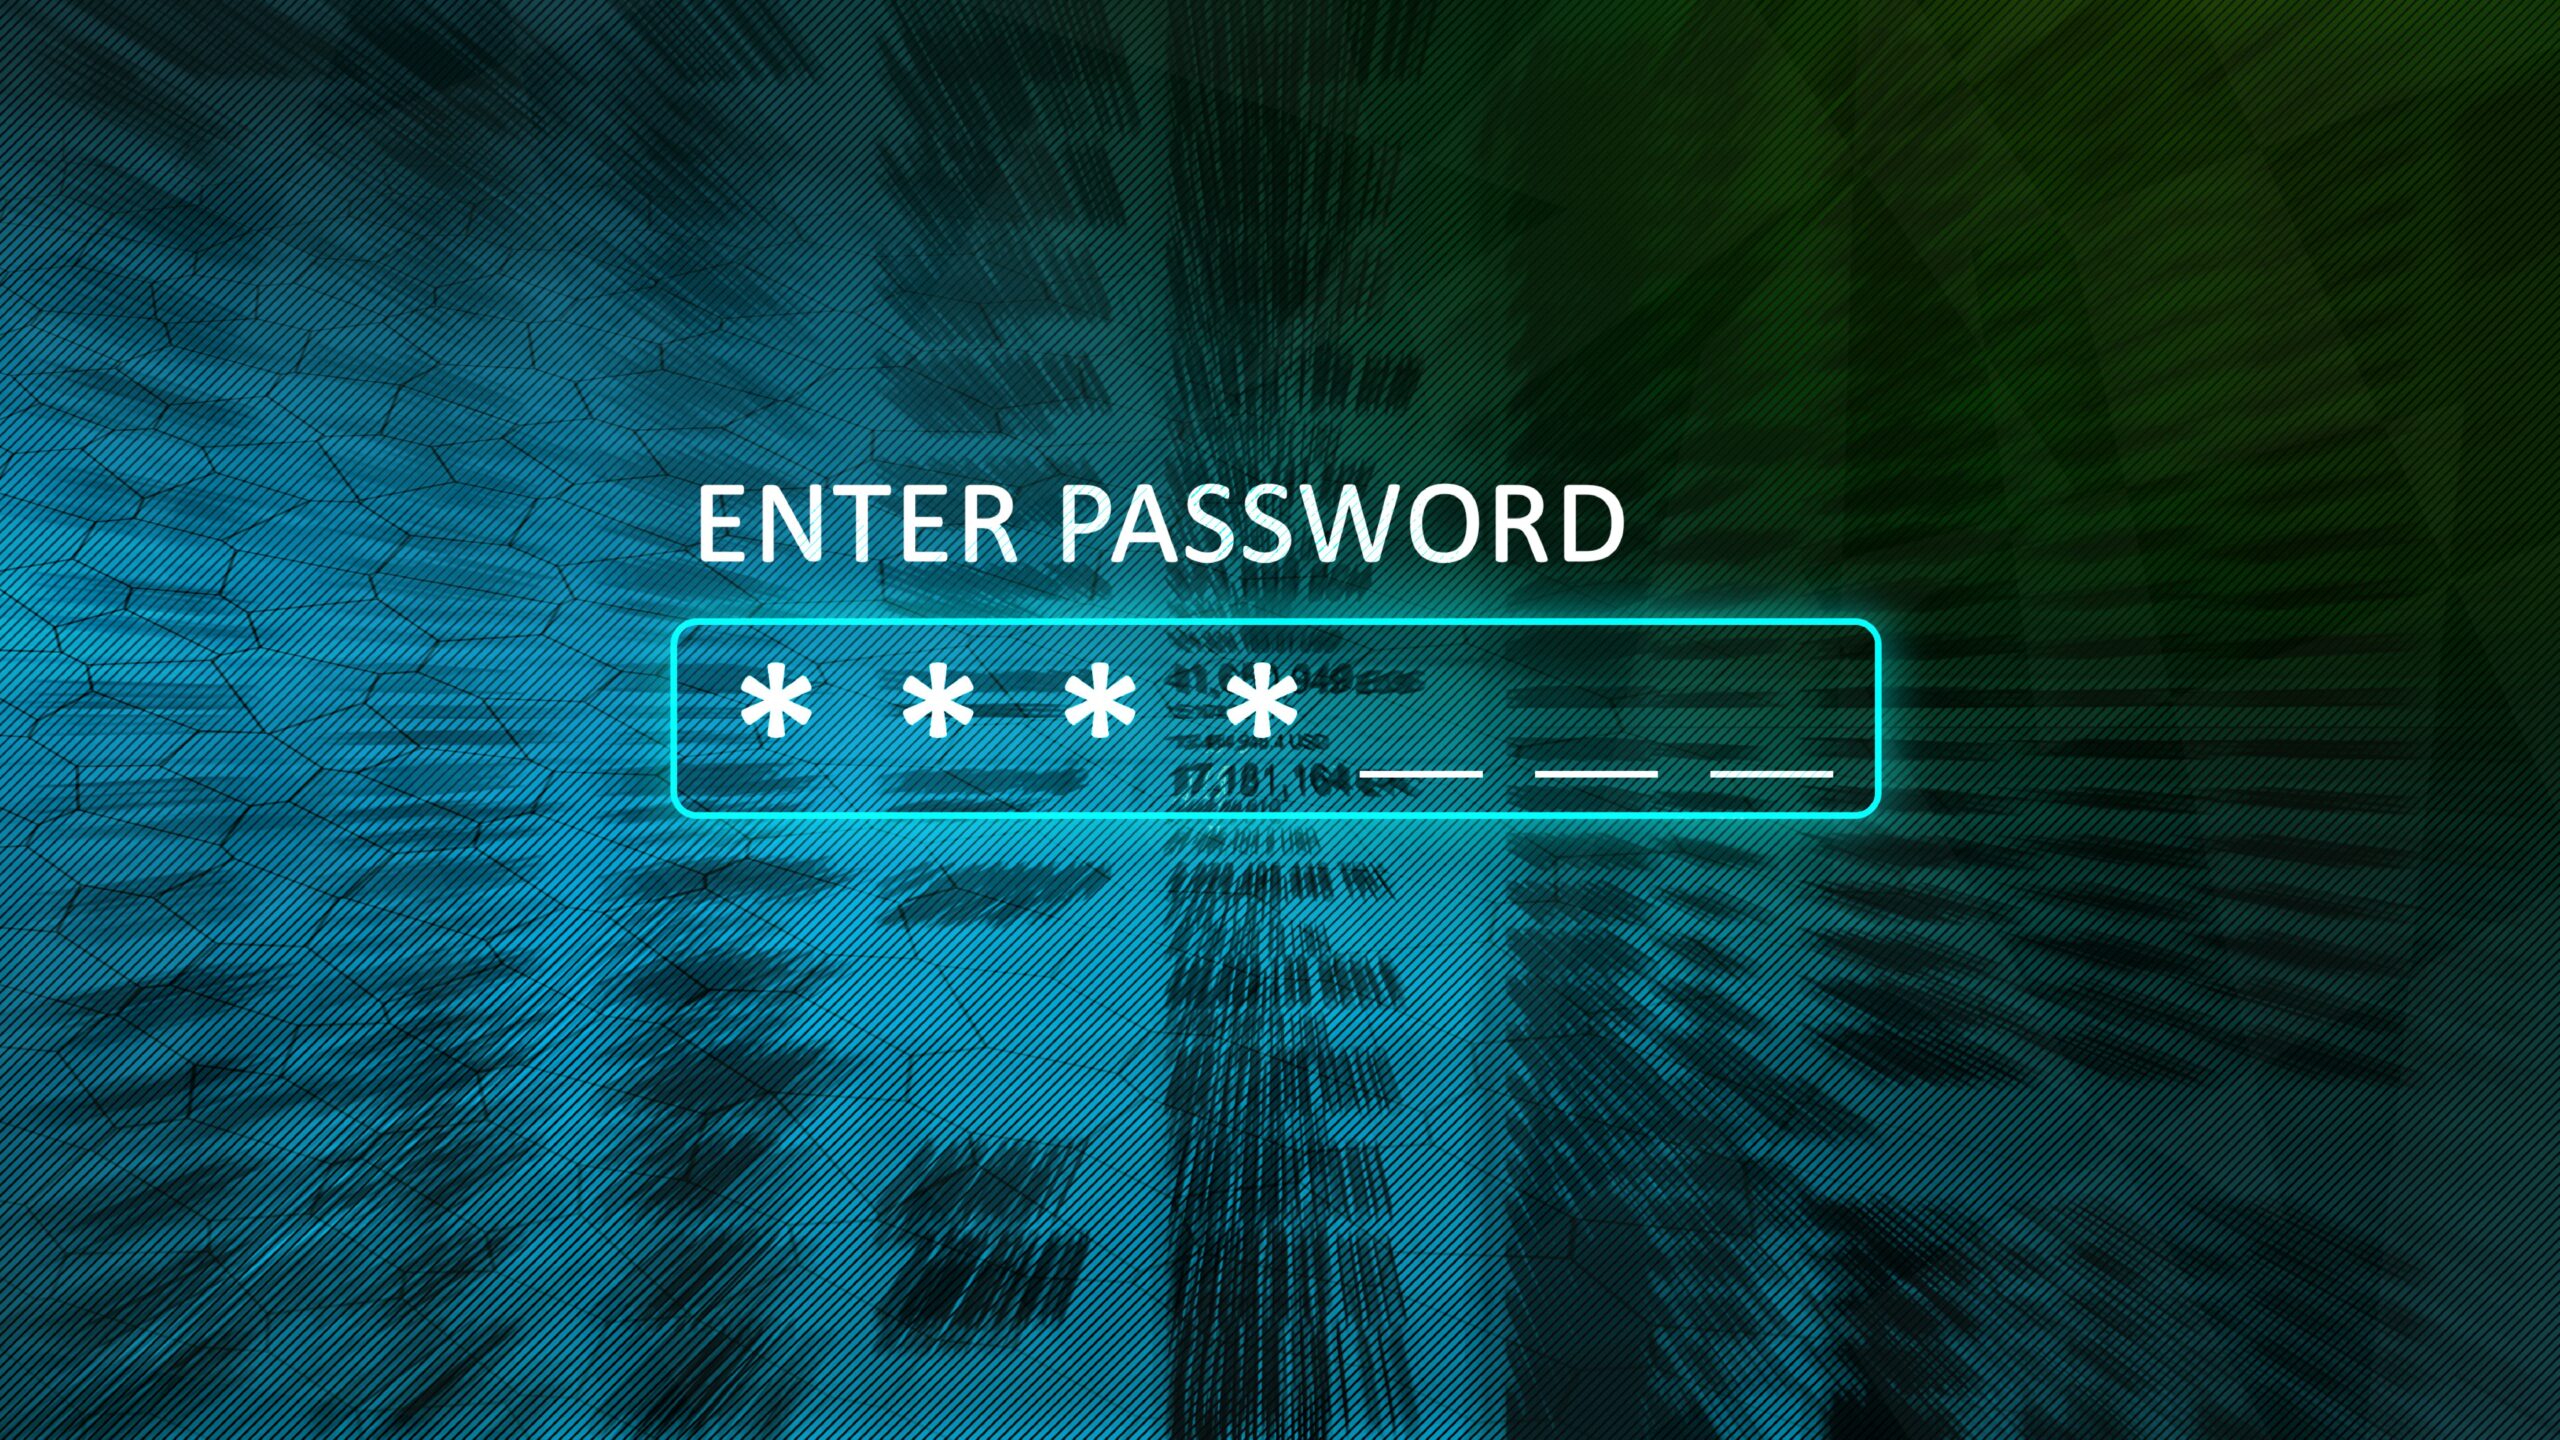 Is this password to enter. Enter password. Пароль фото. Enter password обои. System password enter password.